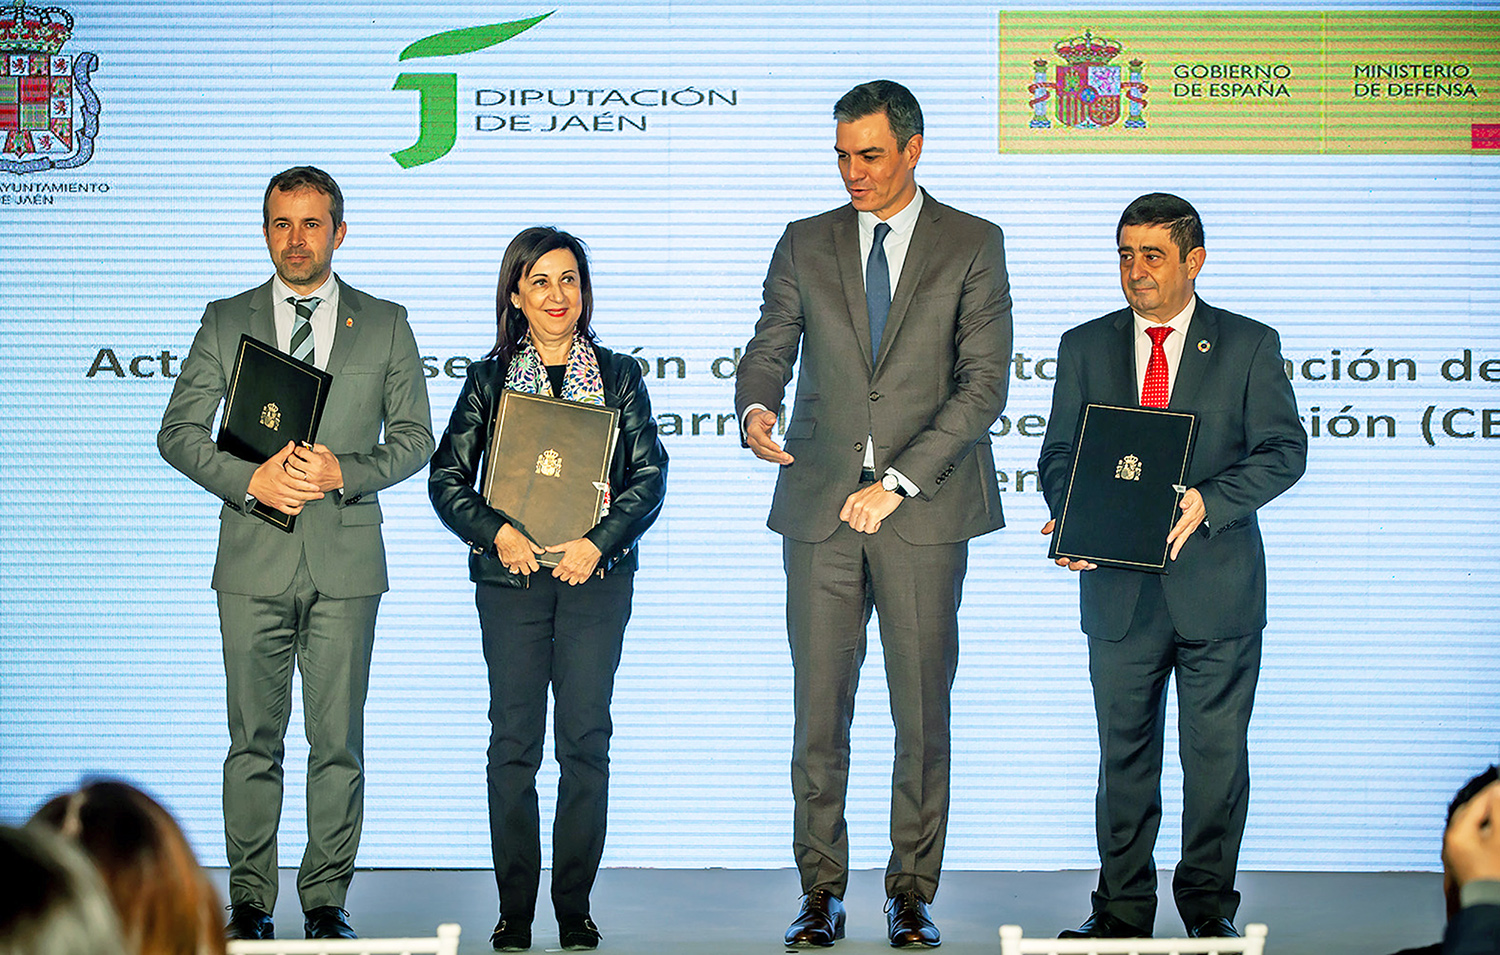 Pedro Sánchez anuncia inversión de 222 millones € para el CETEDEX en Jaén, que permitirá la creación de más de 2.600 empleos